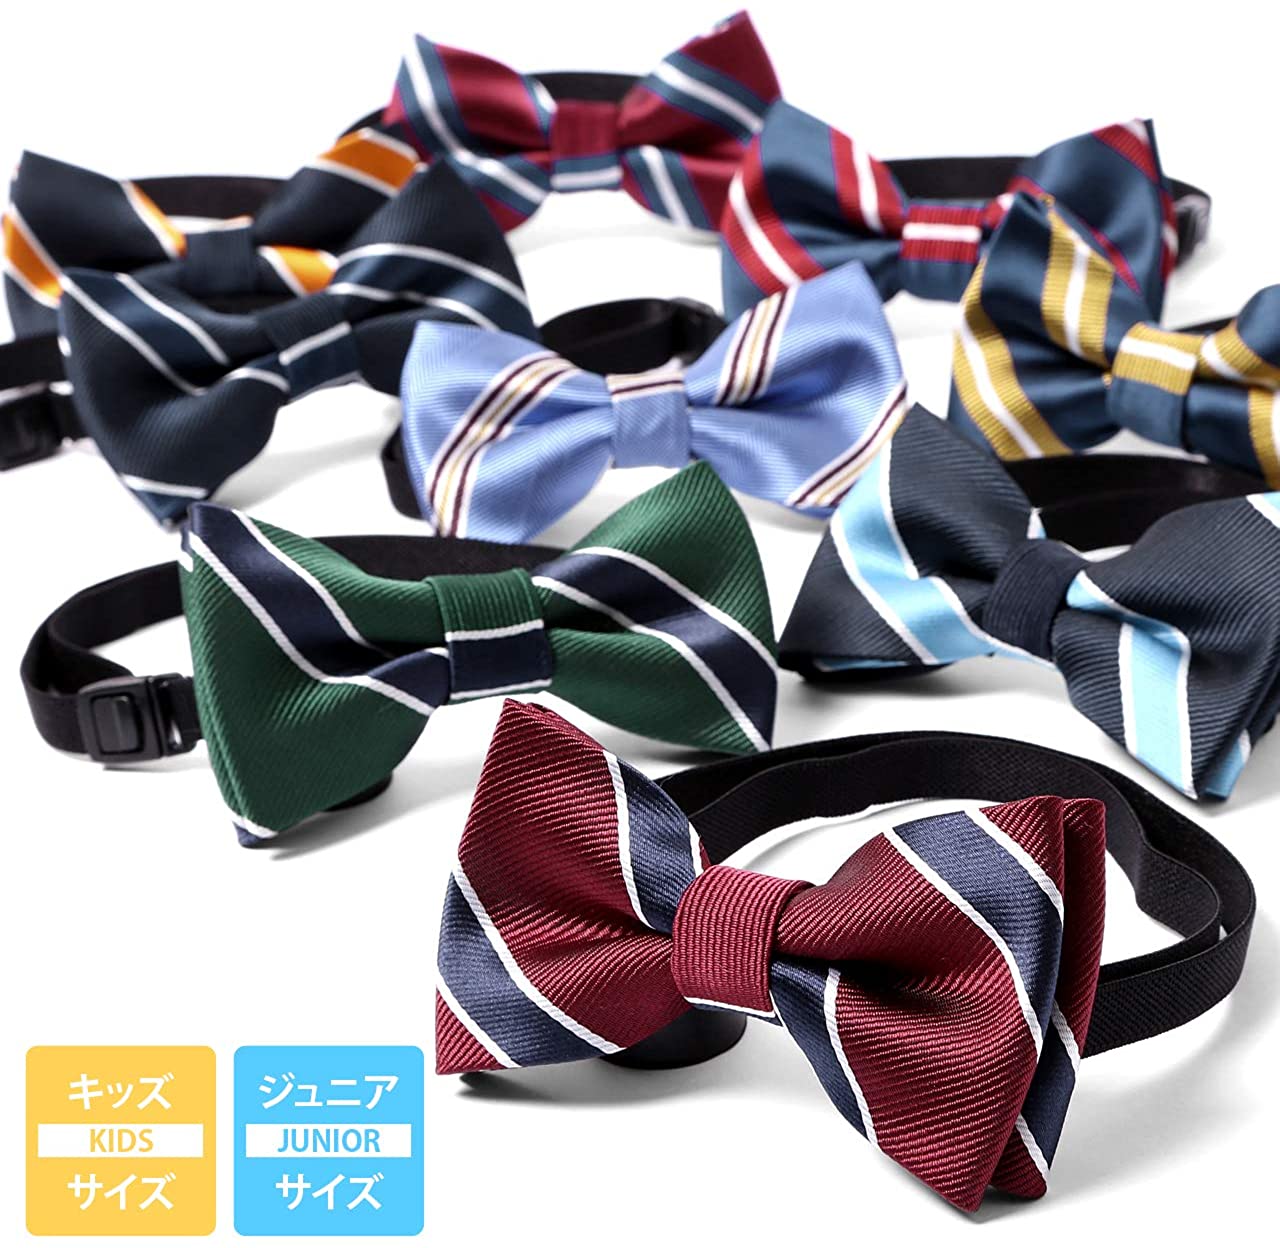 M.H.A.style 最新デザインの 蝶ネクタイ 子供用 ストライプ 簡単装着 キッズ 男子 男の子 ボウタイ